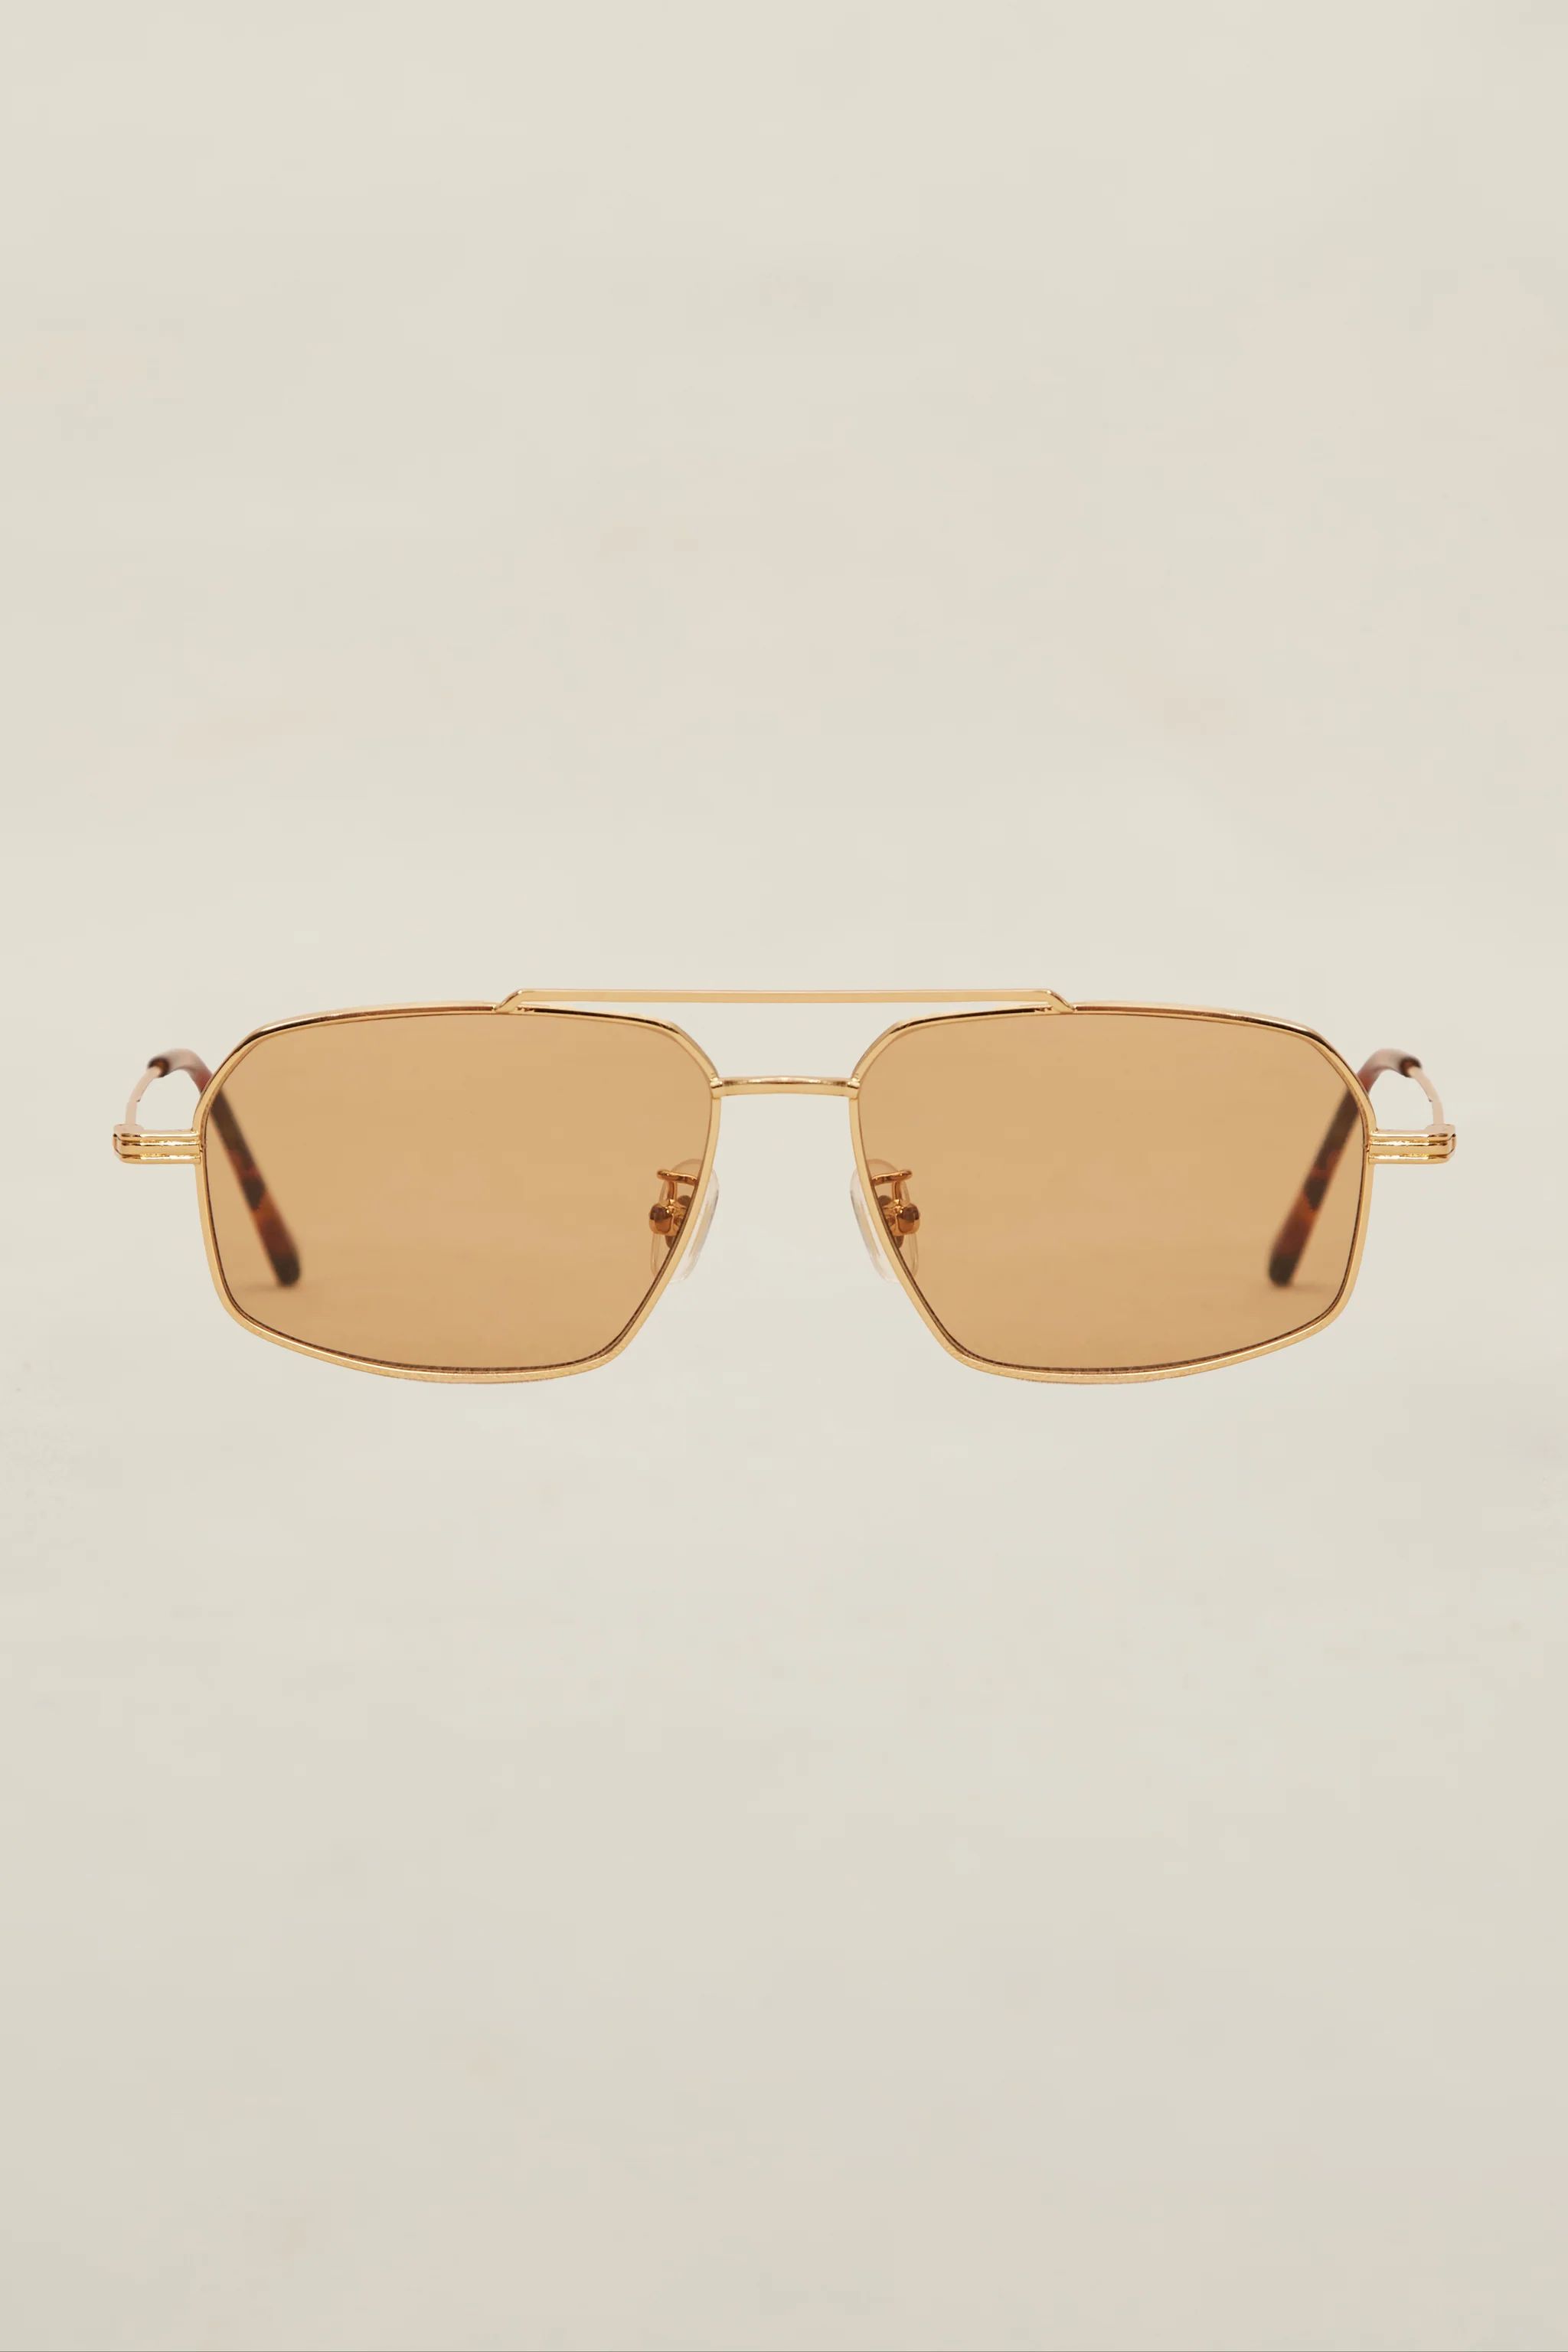 Lagos Sunglasses | Devon Windsor